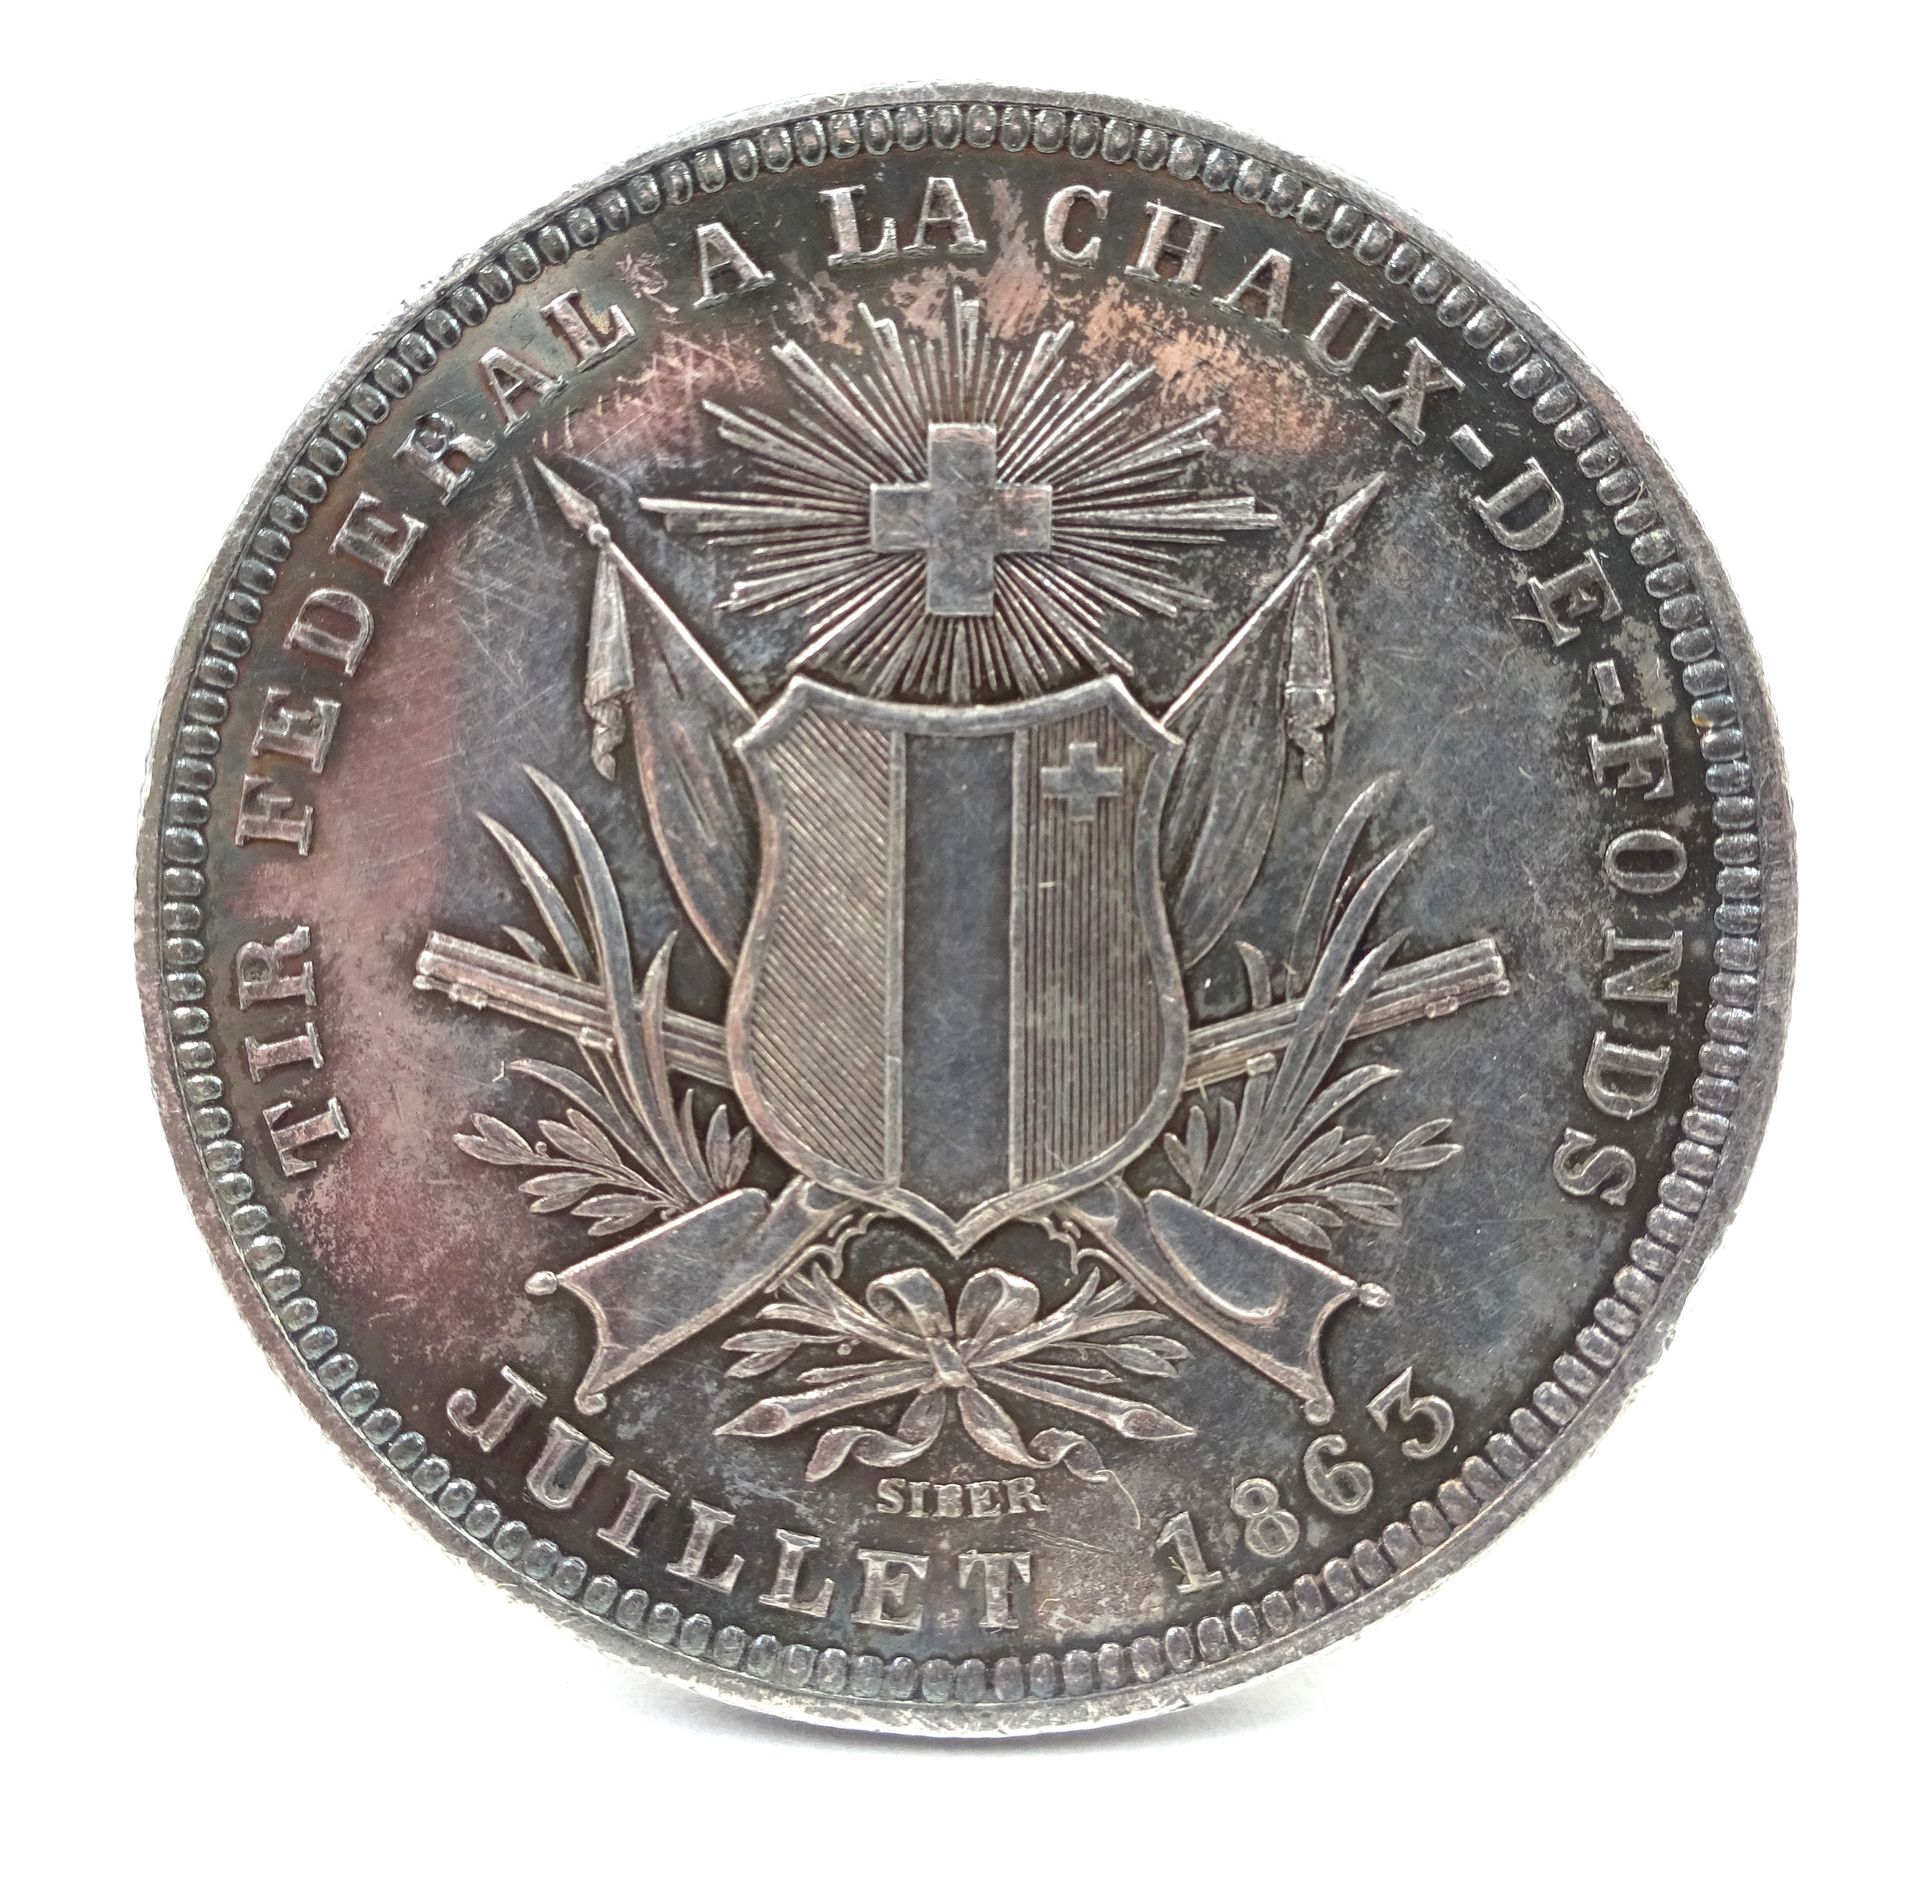 Null 5 Swiss franc silver coin, La Chaux-de-Fonds, July 1863. 25.03 g net.